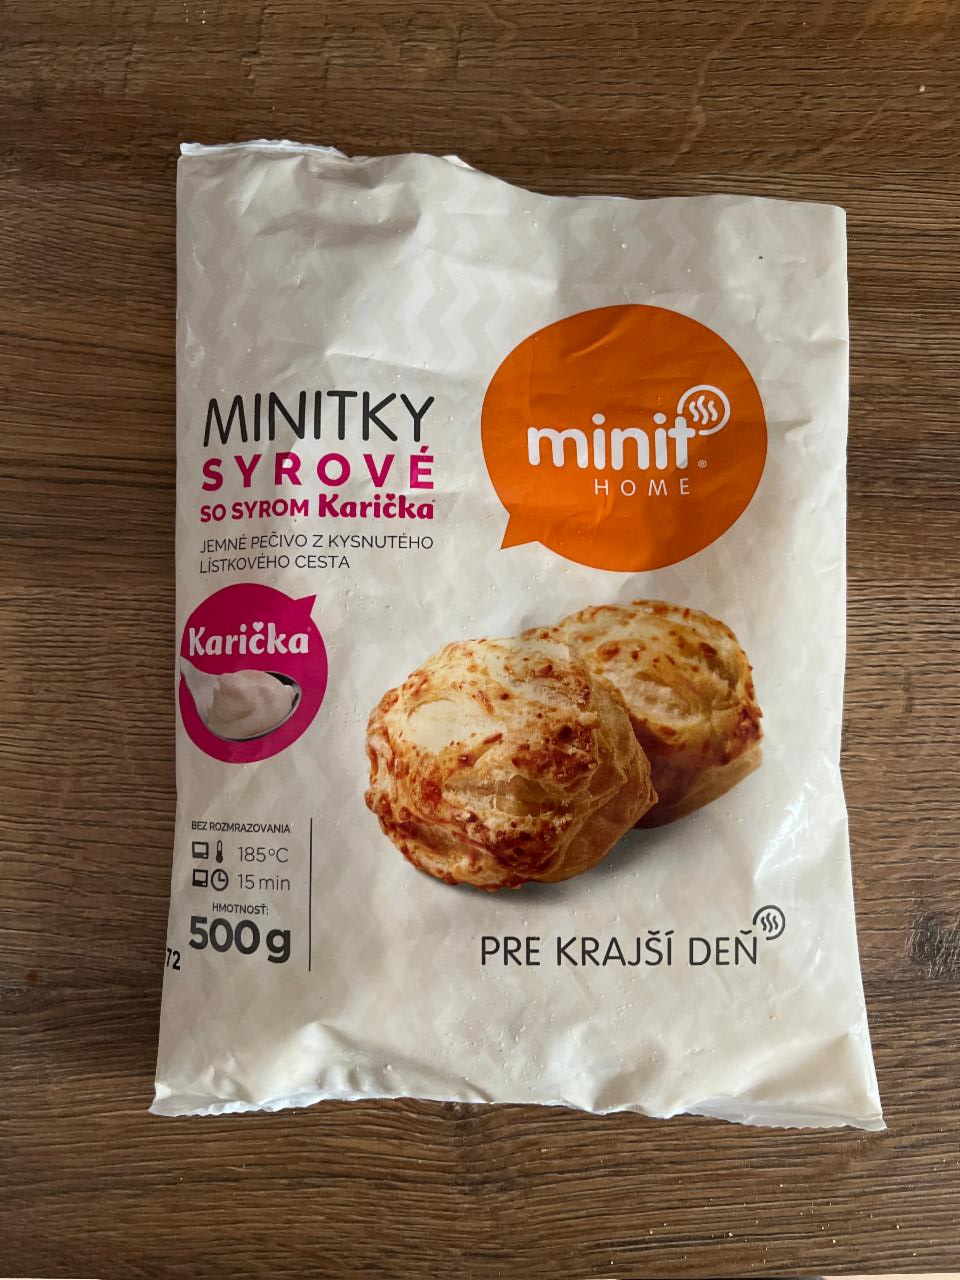 Fotografie - Minitky Syrové so syrom Karička